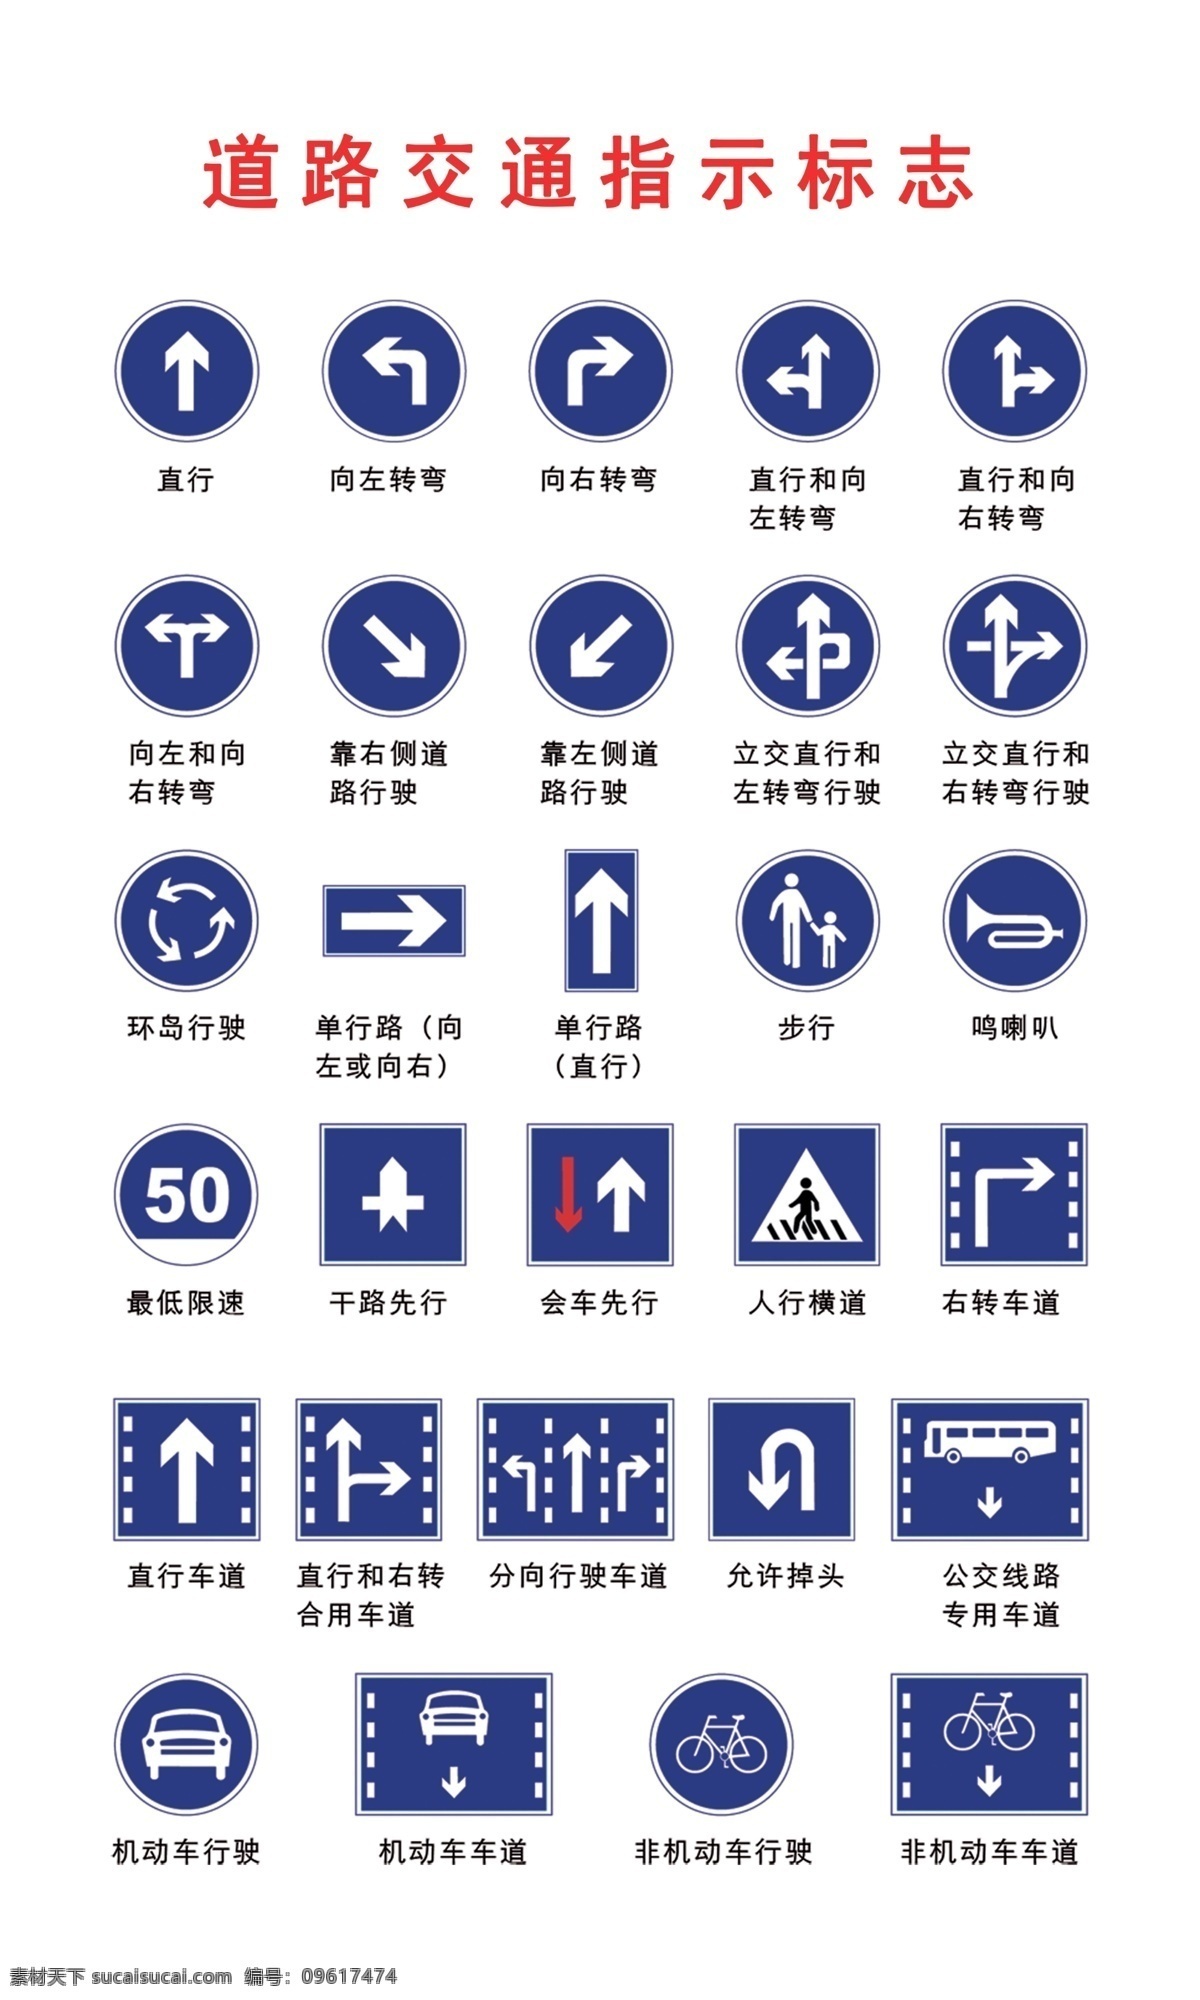 道路交通 标志 指示 道路交通标志 指示标志 psd源文件